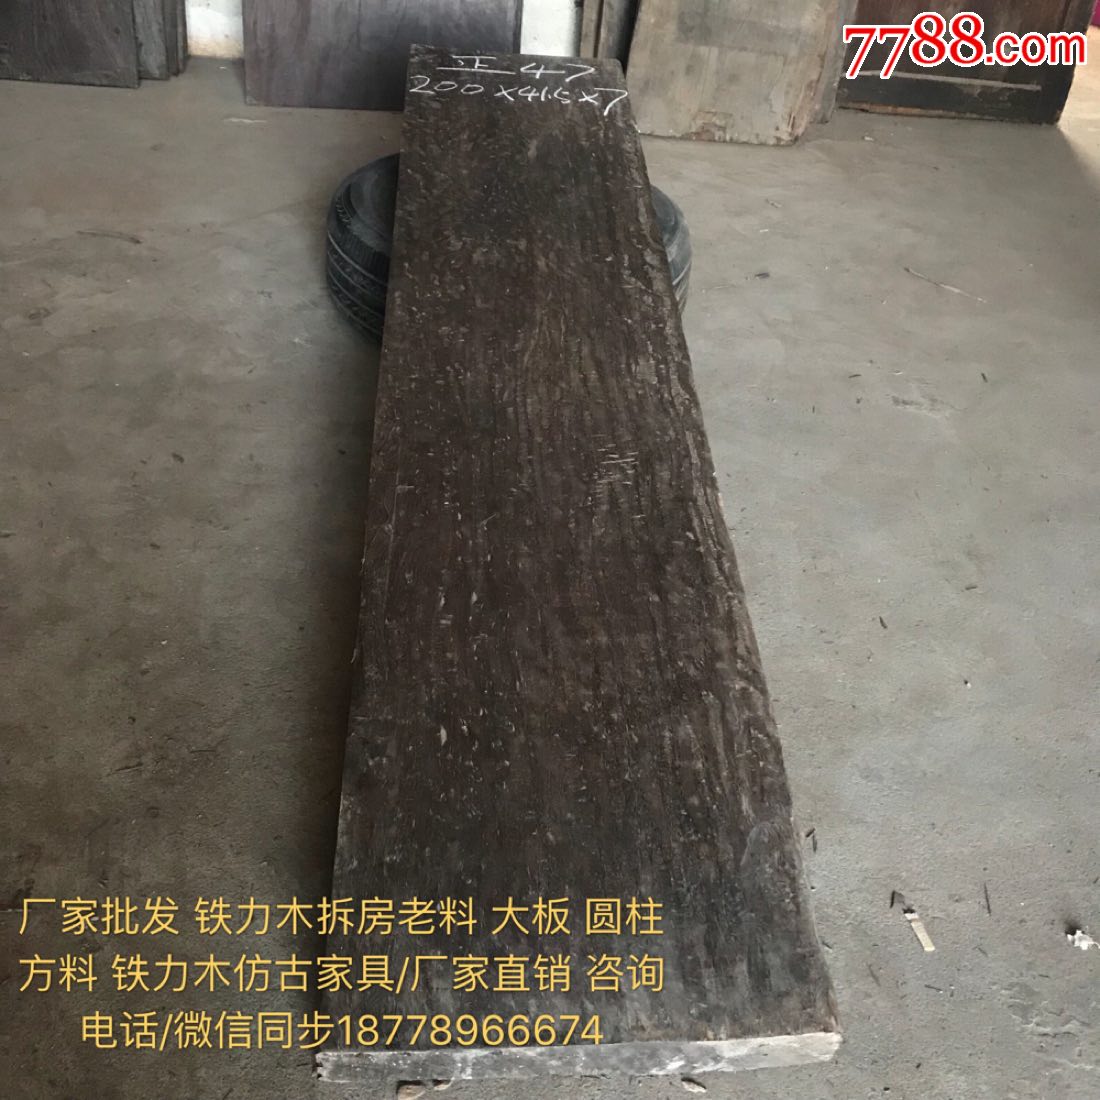 上海批发铁力木老料大板子铁力木木方